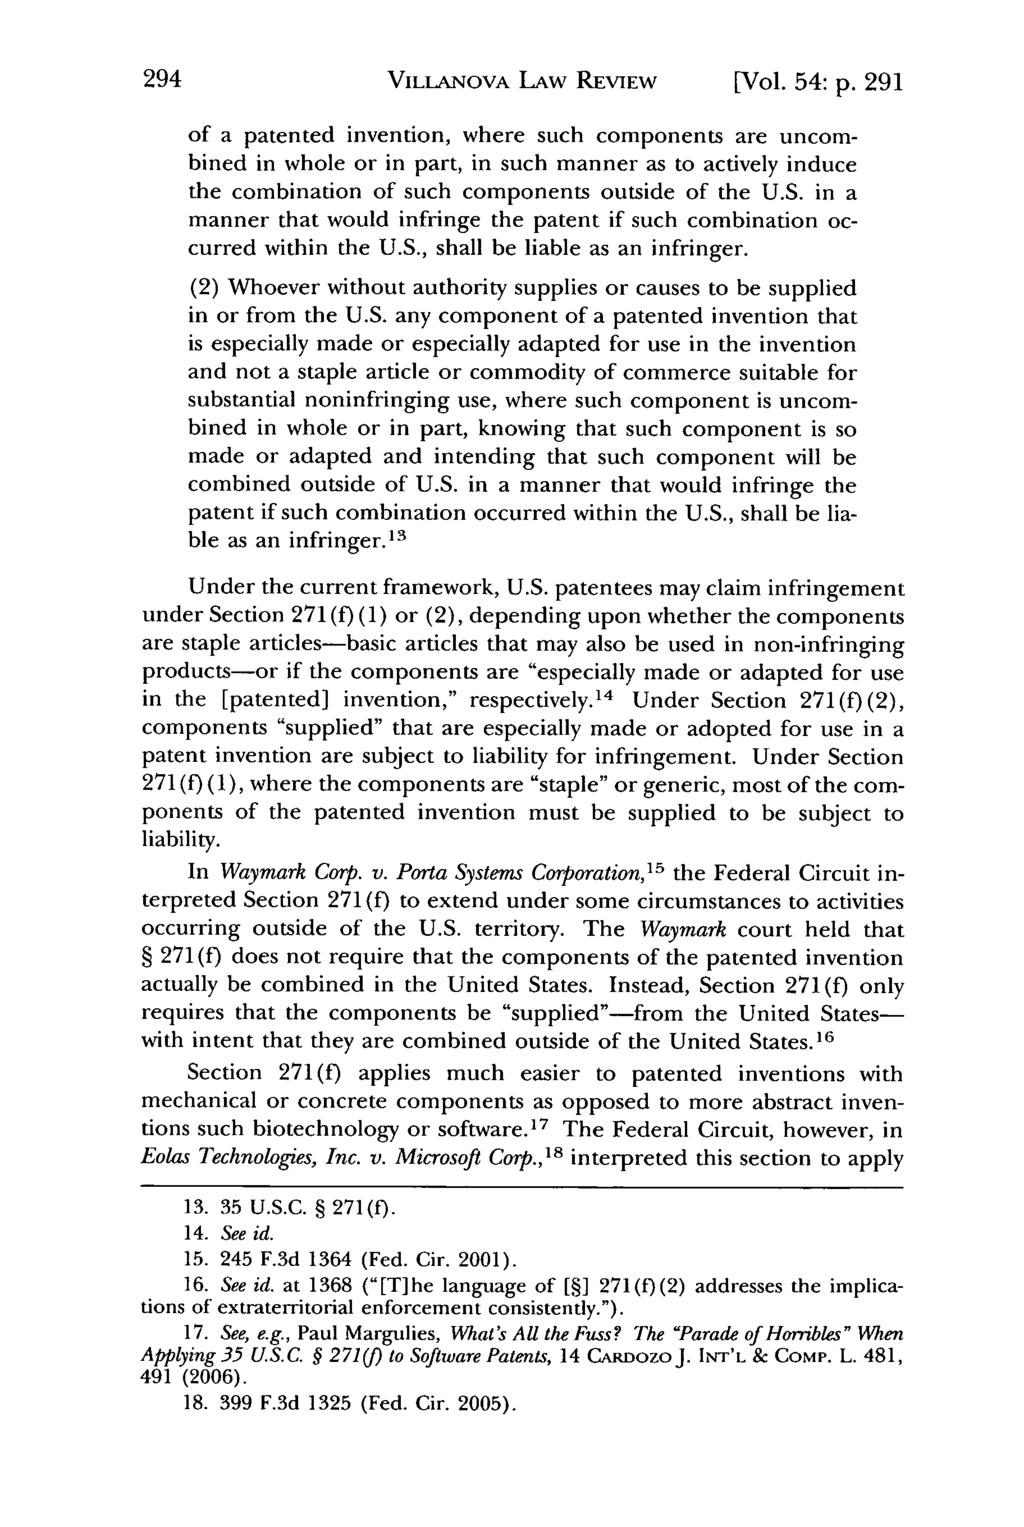 Villanova Law Review, Vol. 54, Iss. 2 [2009], Art. 3 VILLANOVA LAW REVIEW [Vol. 54: p.